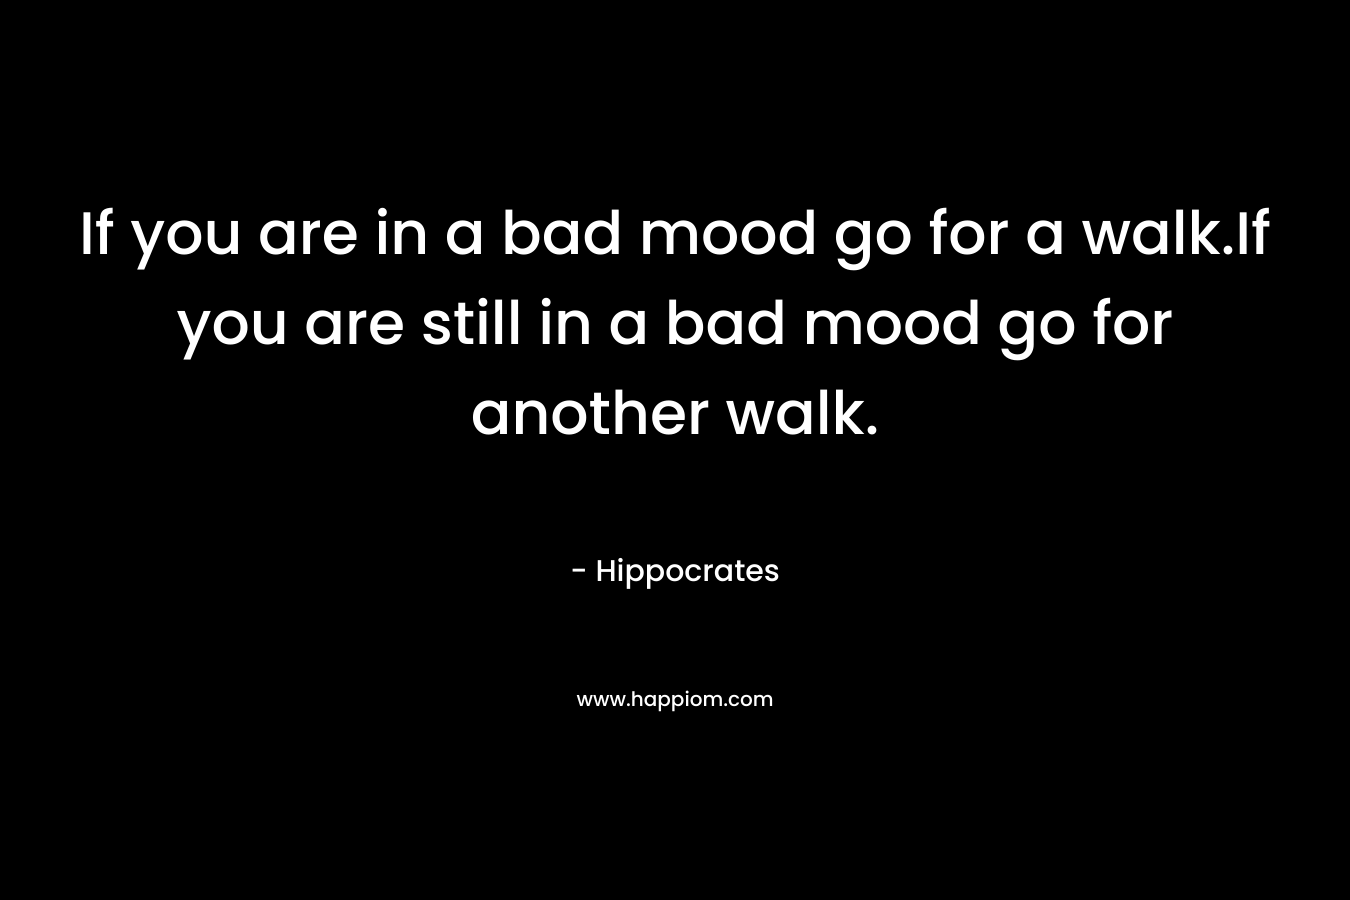 If you are in a bad mood go for a walk.If you are still in a bad mood go for another walk.